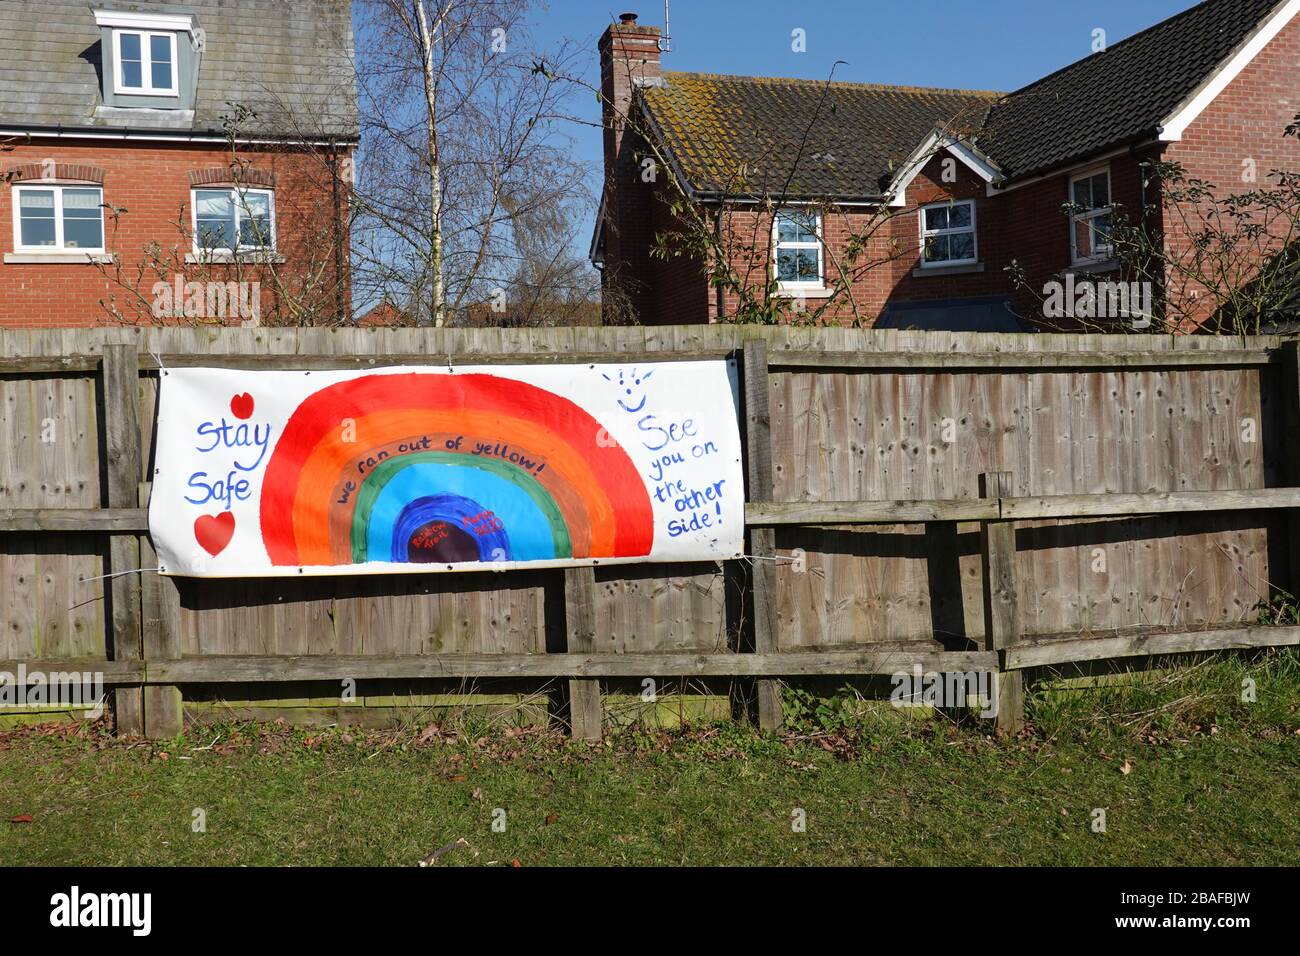 Ipswich, Suffolk - 27 de marzo de 2020: Bloqueo de coronavirus. Arte arcoiris de los niños en un sendero alrededor de la ciudad de Suffolk. Permanezca seguro y véa por el otro lado. Foto de stock